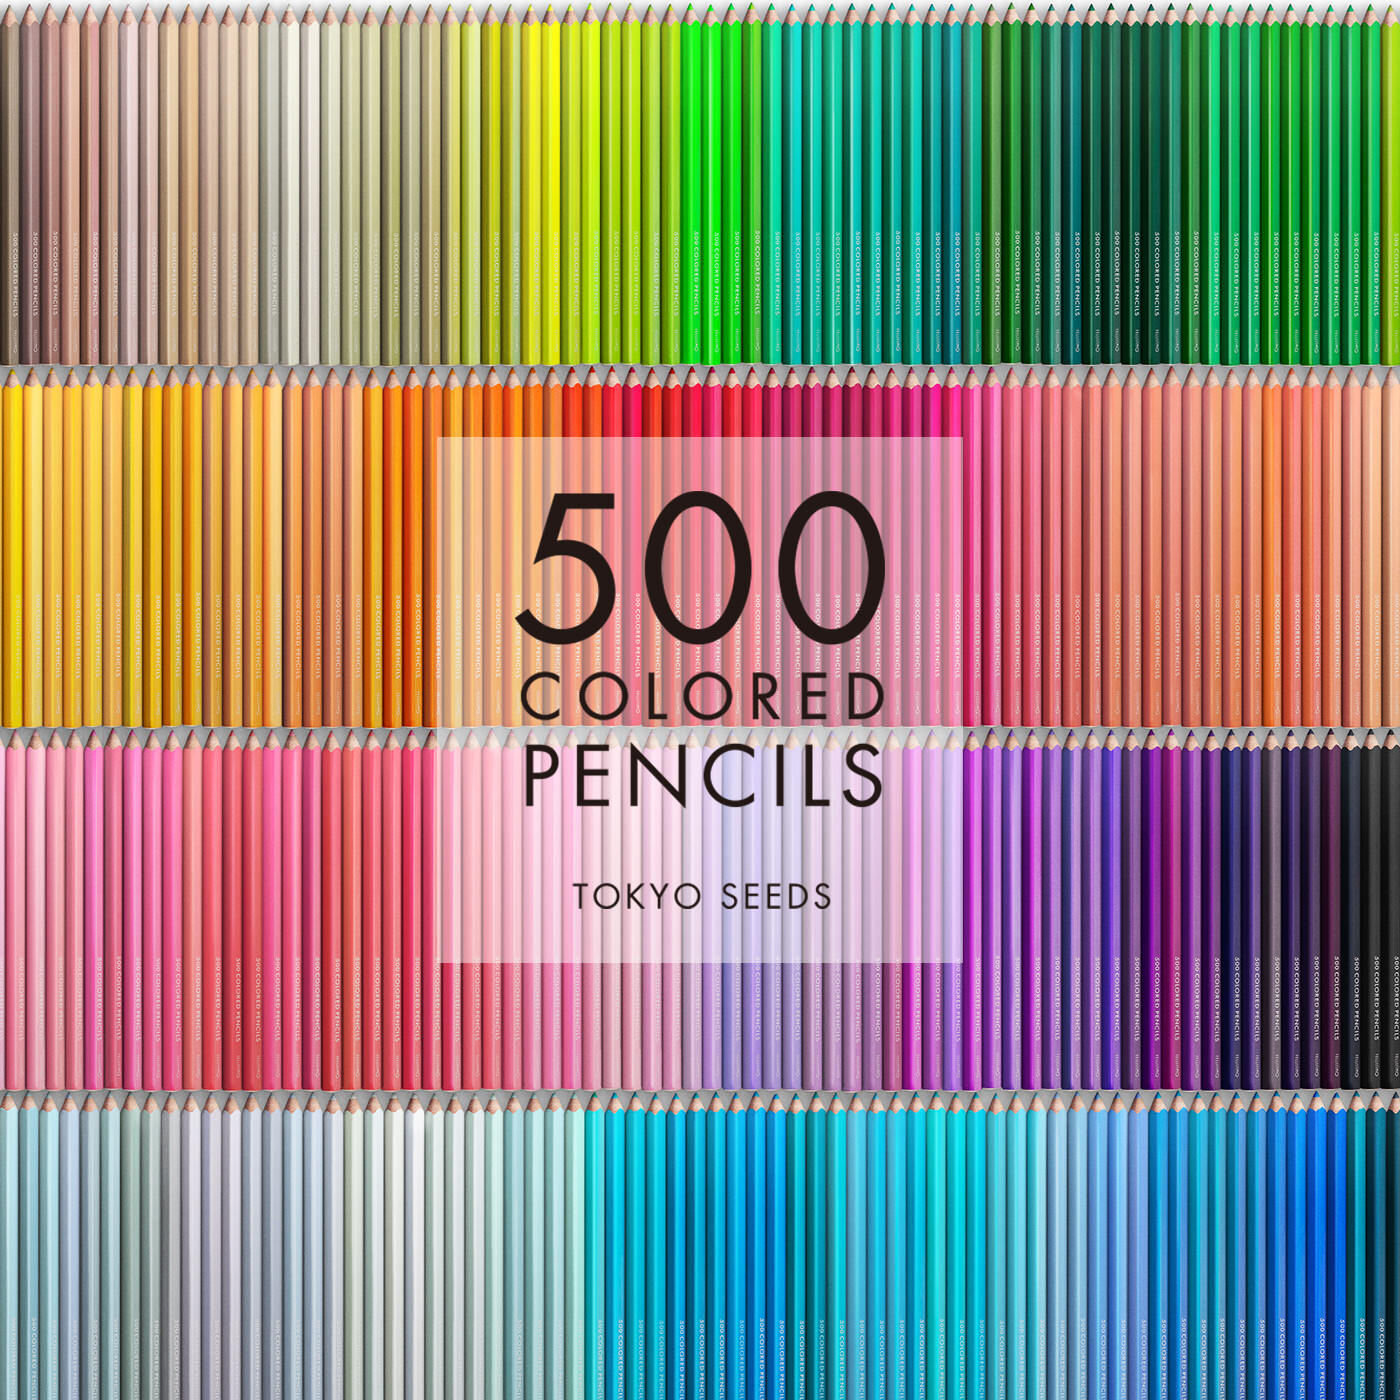 Real Stock|【408/500 WELL RESTED】500色の色えんぴつ TOKYO SEEDS|1992年、世界初の「500色」という膨大な色数の色えんぴつが誕生して以来、その販売数は発売当初から合わせると、世界55ヵ国10万セット以上。今回、メイド・イン・ジャパンにこだわり、すべてが新しく生まれ変わって登場しました。